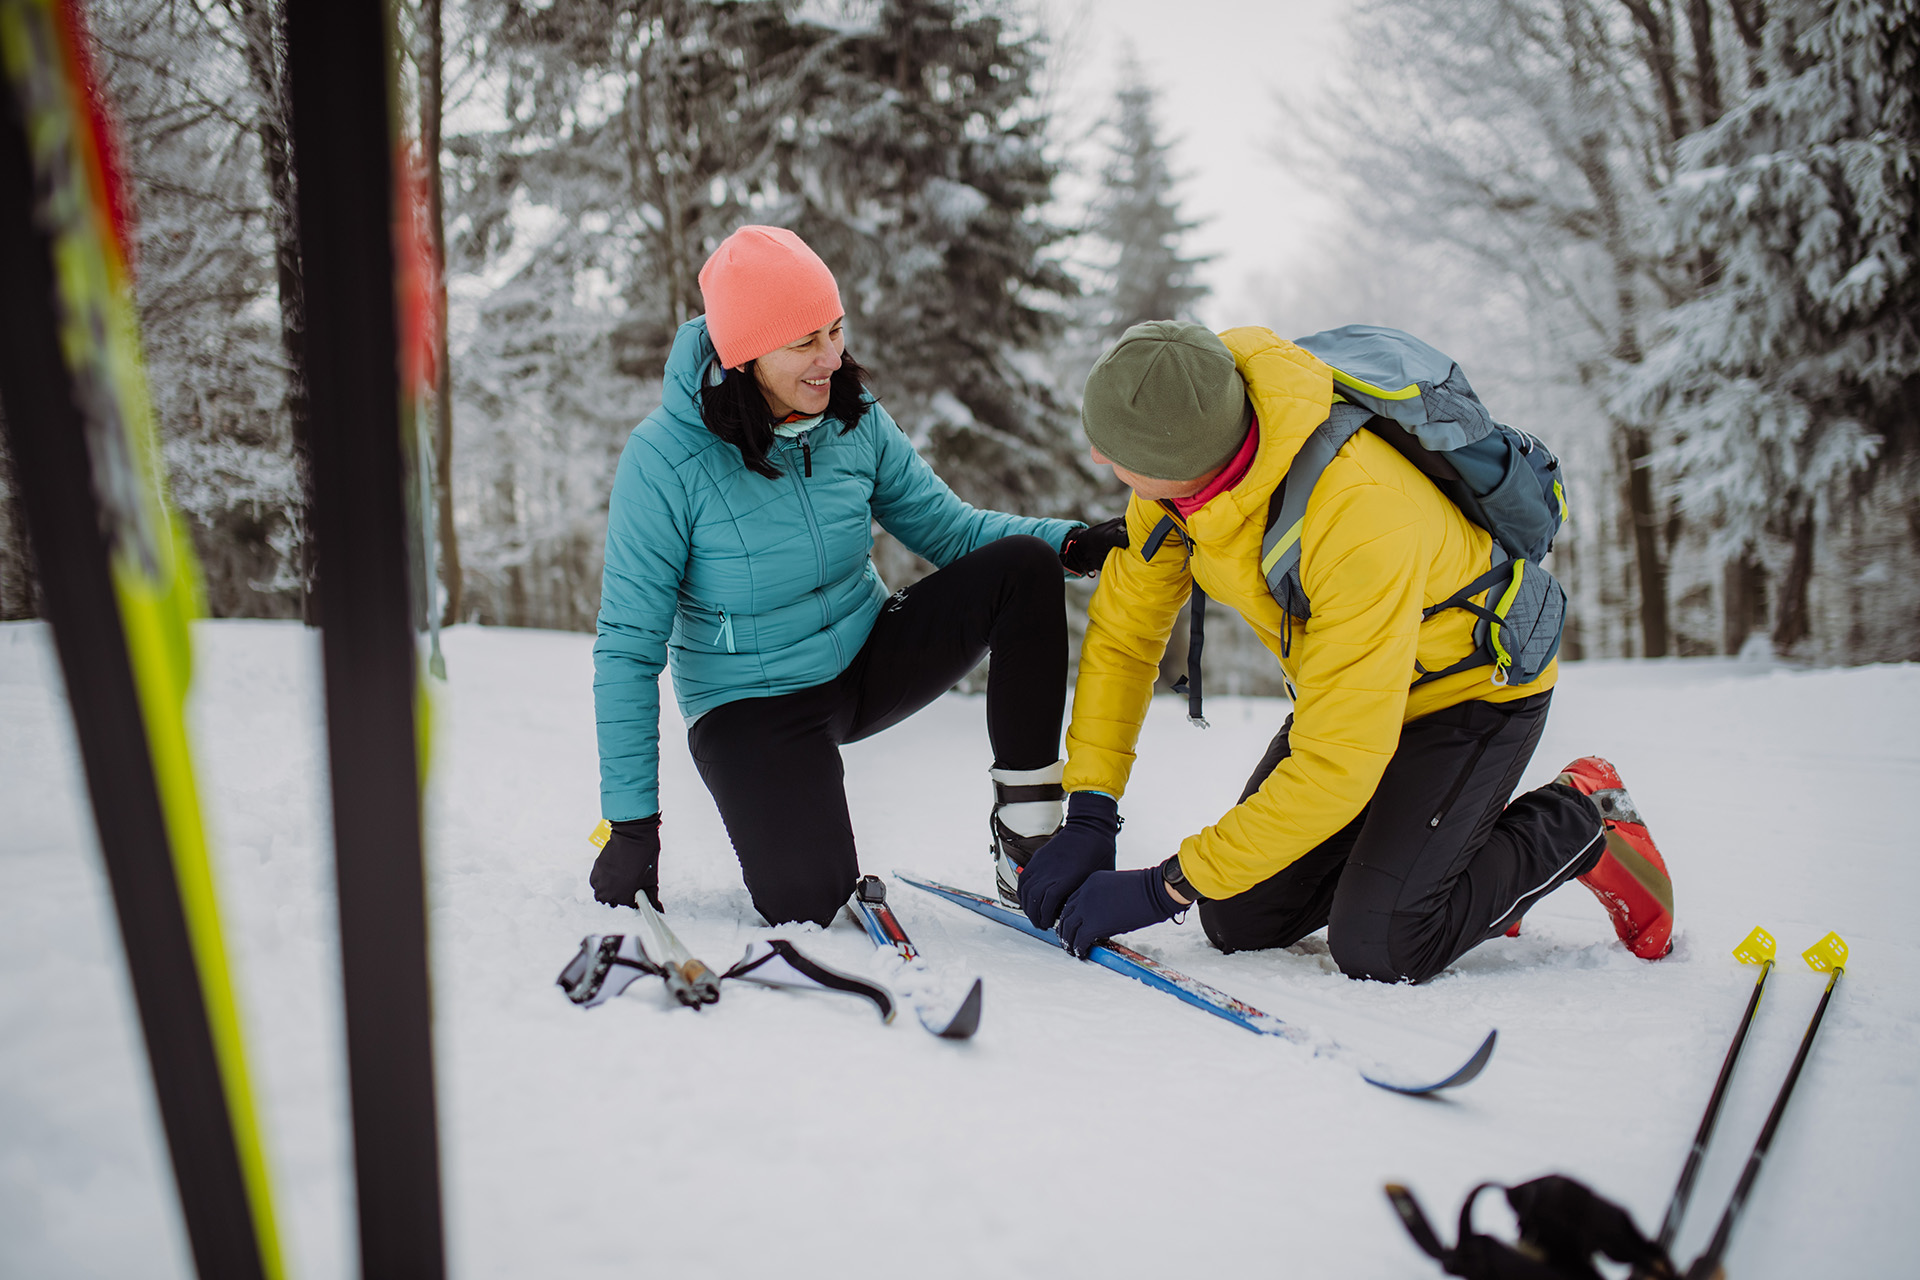 Mann hjelper dame med å få på seg ski